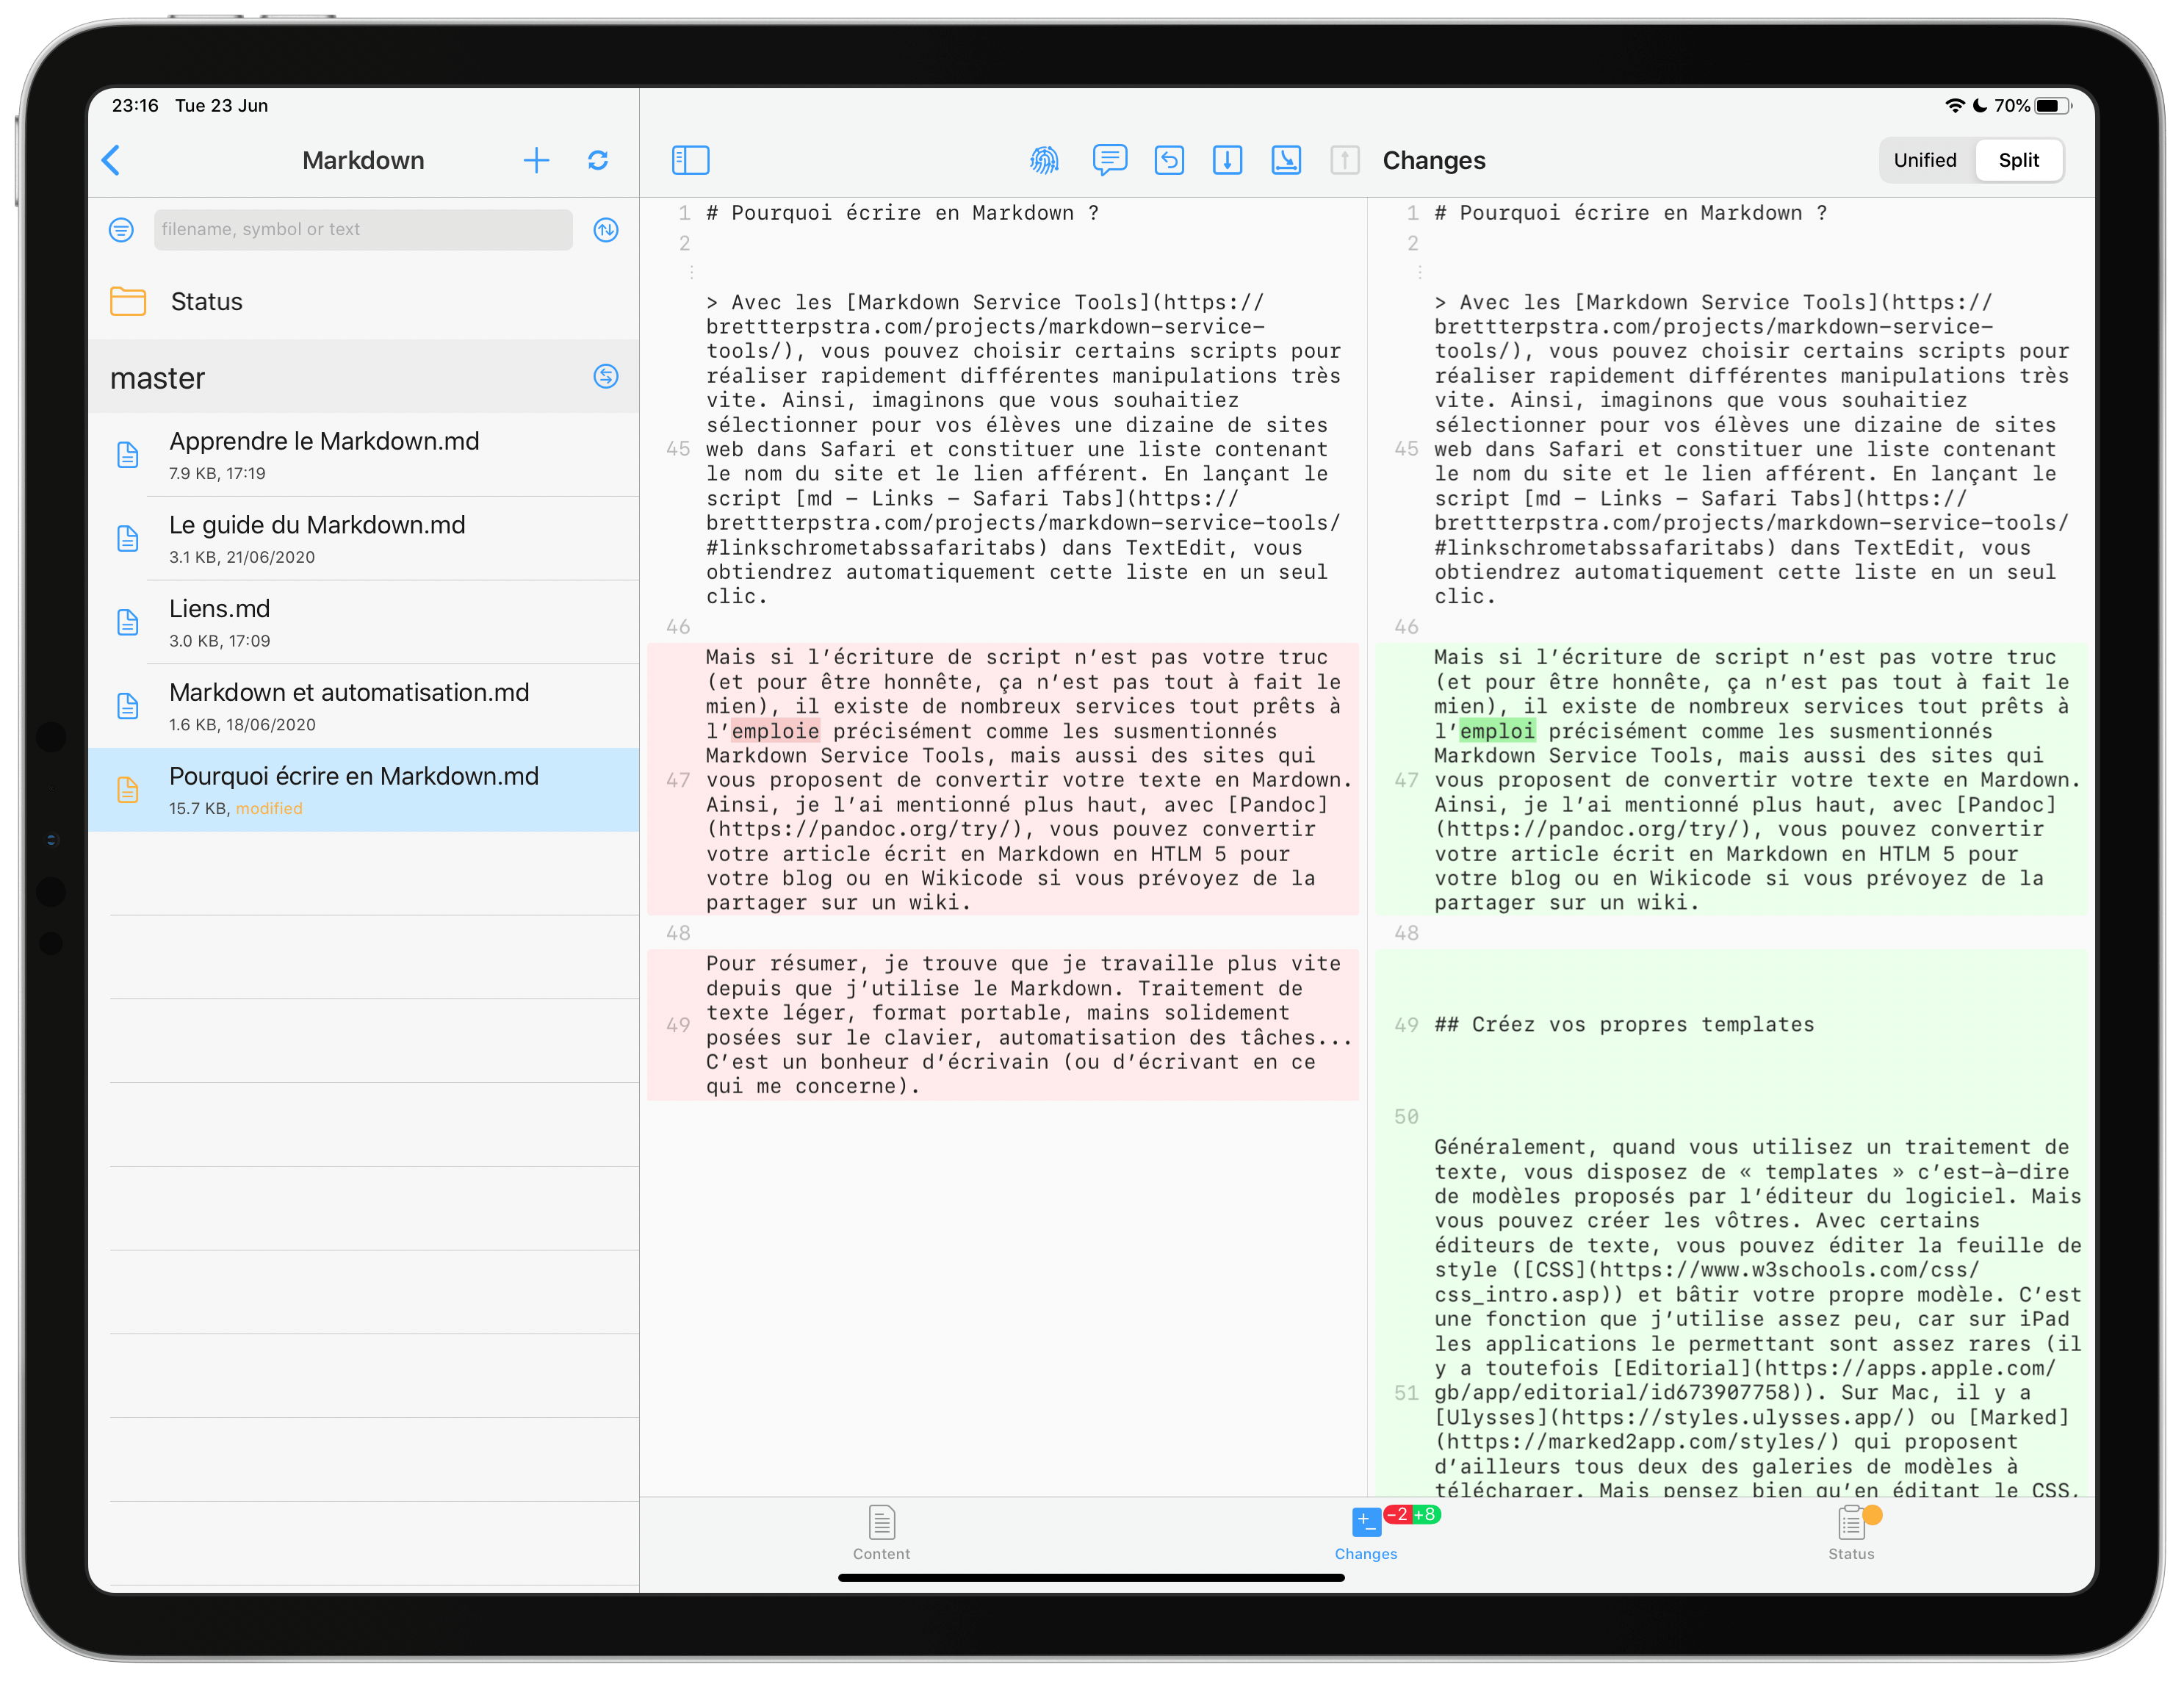 Les deux versions d’un même texte dans Working Copy